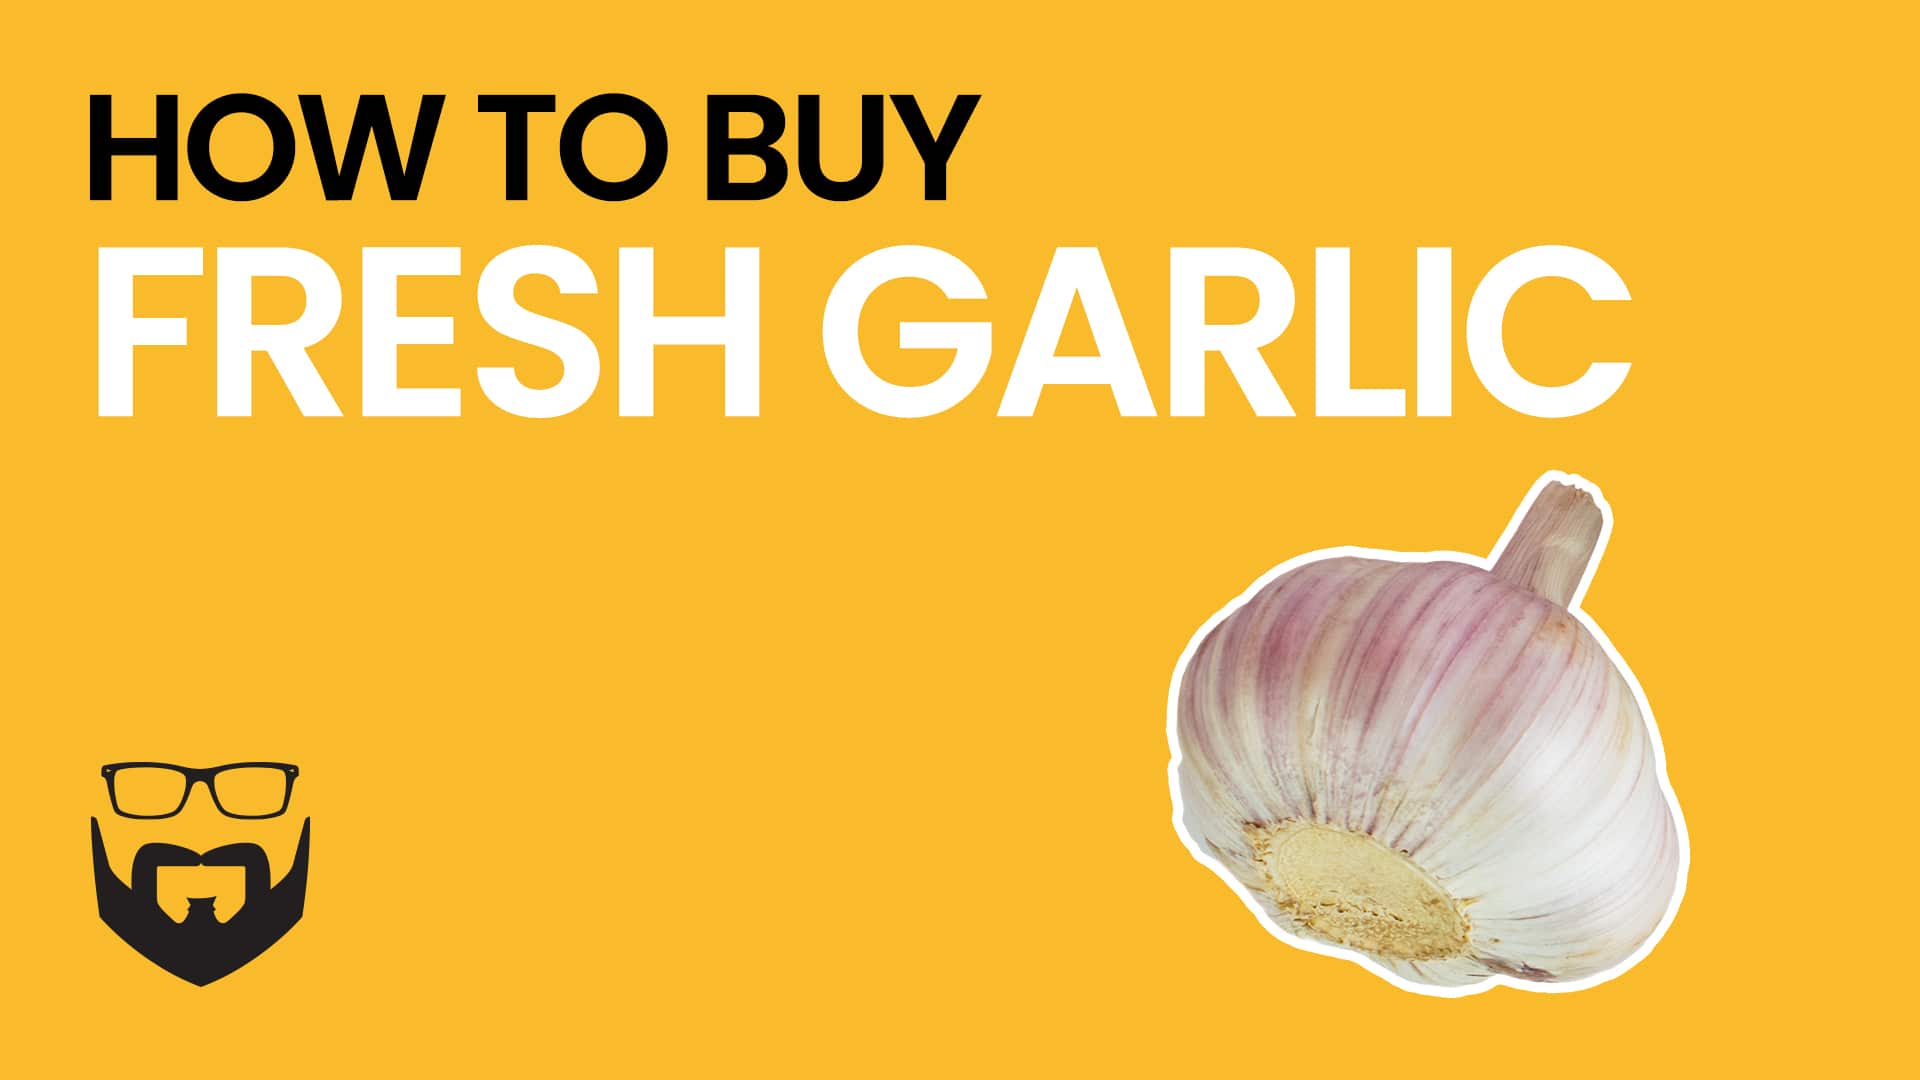 How to Buy Fresh Garlic Video - Yellow